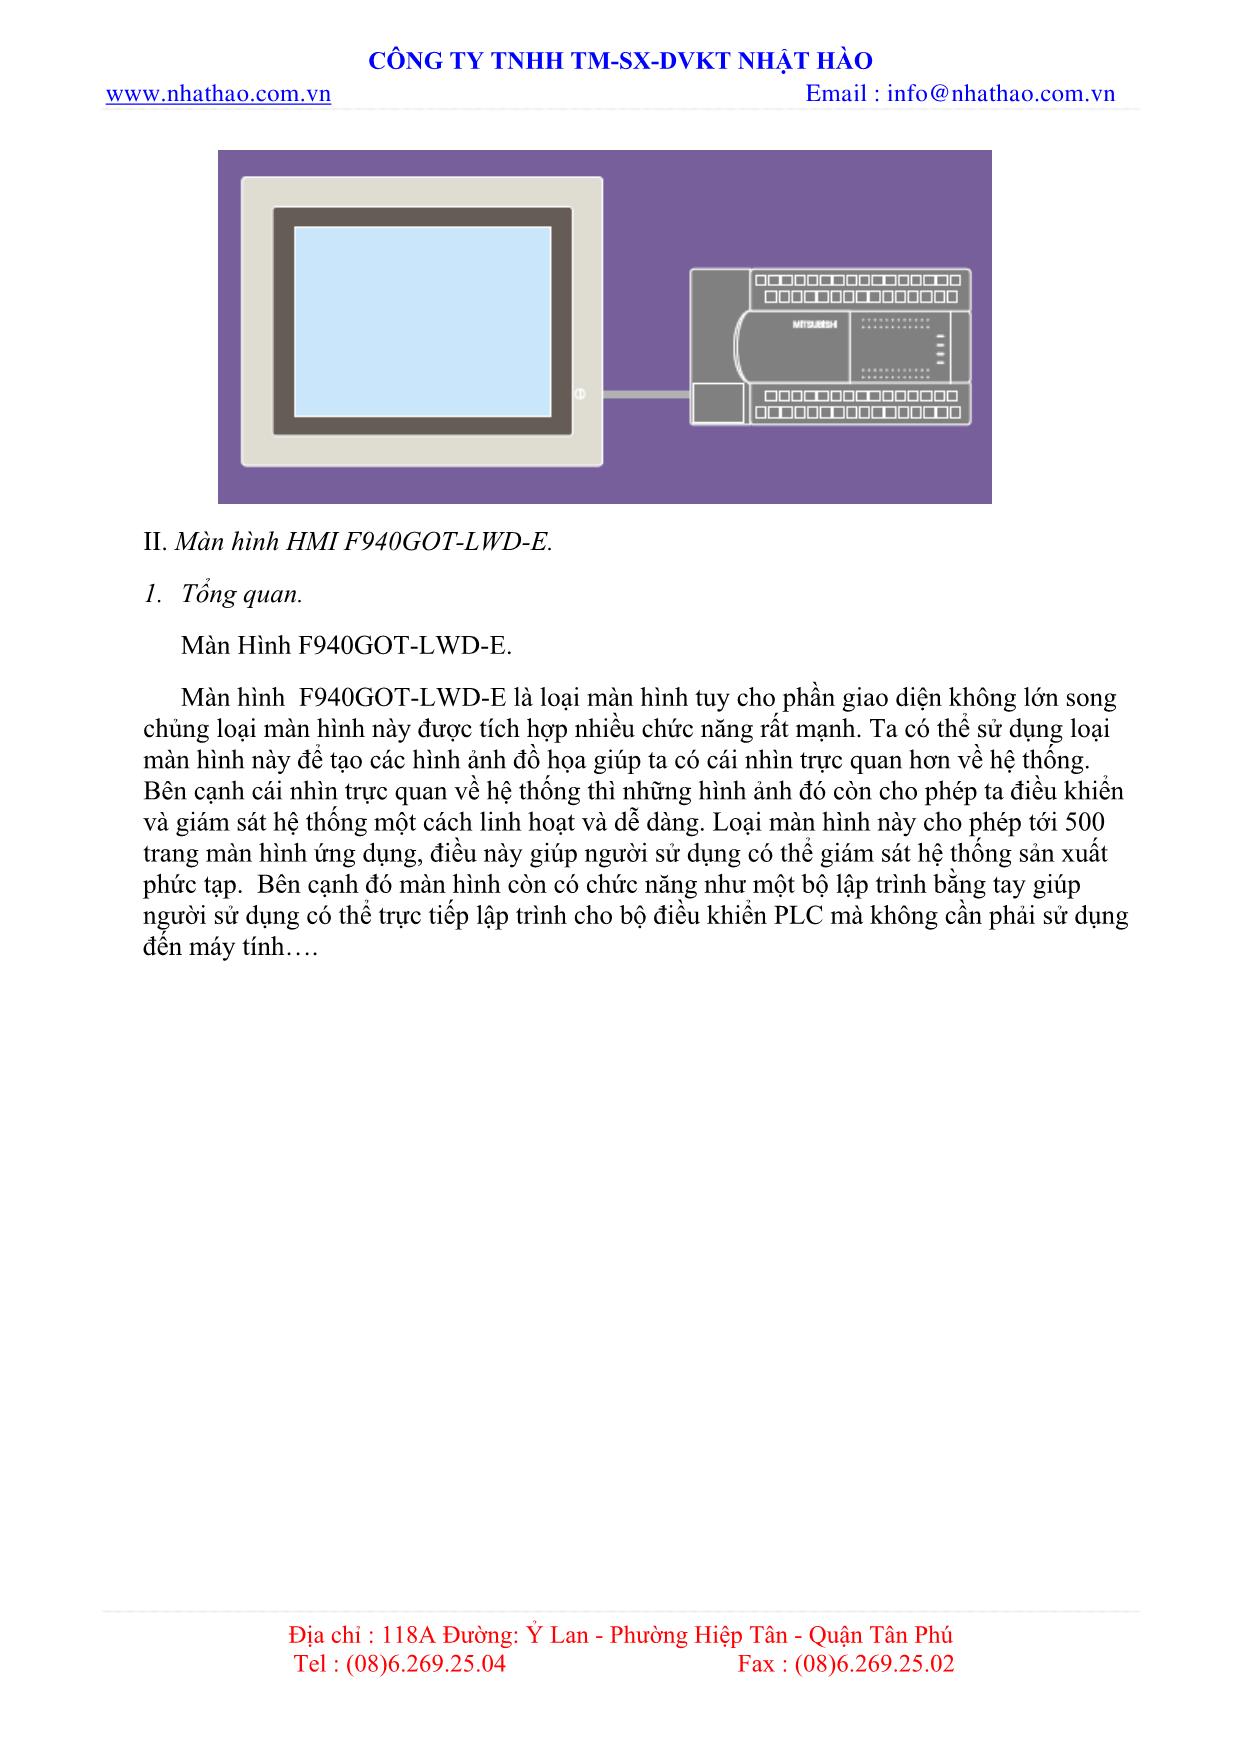 Tài liệu hướng dẫn sử dụng màn hình HMI trang 5